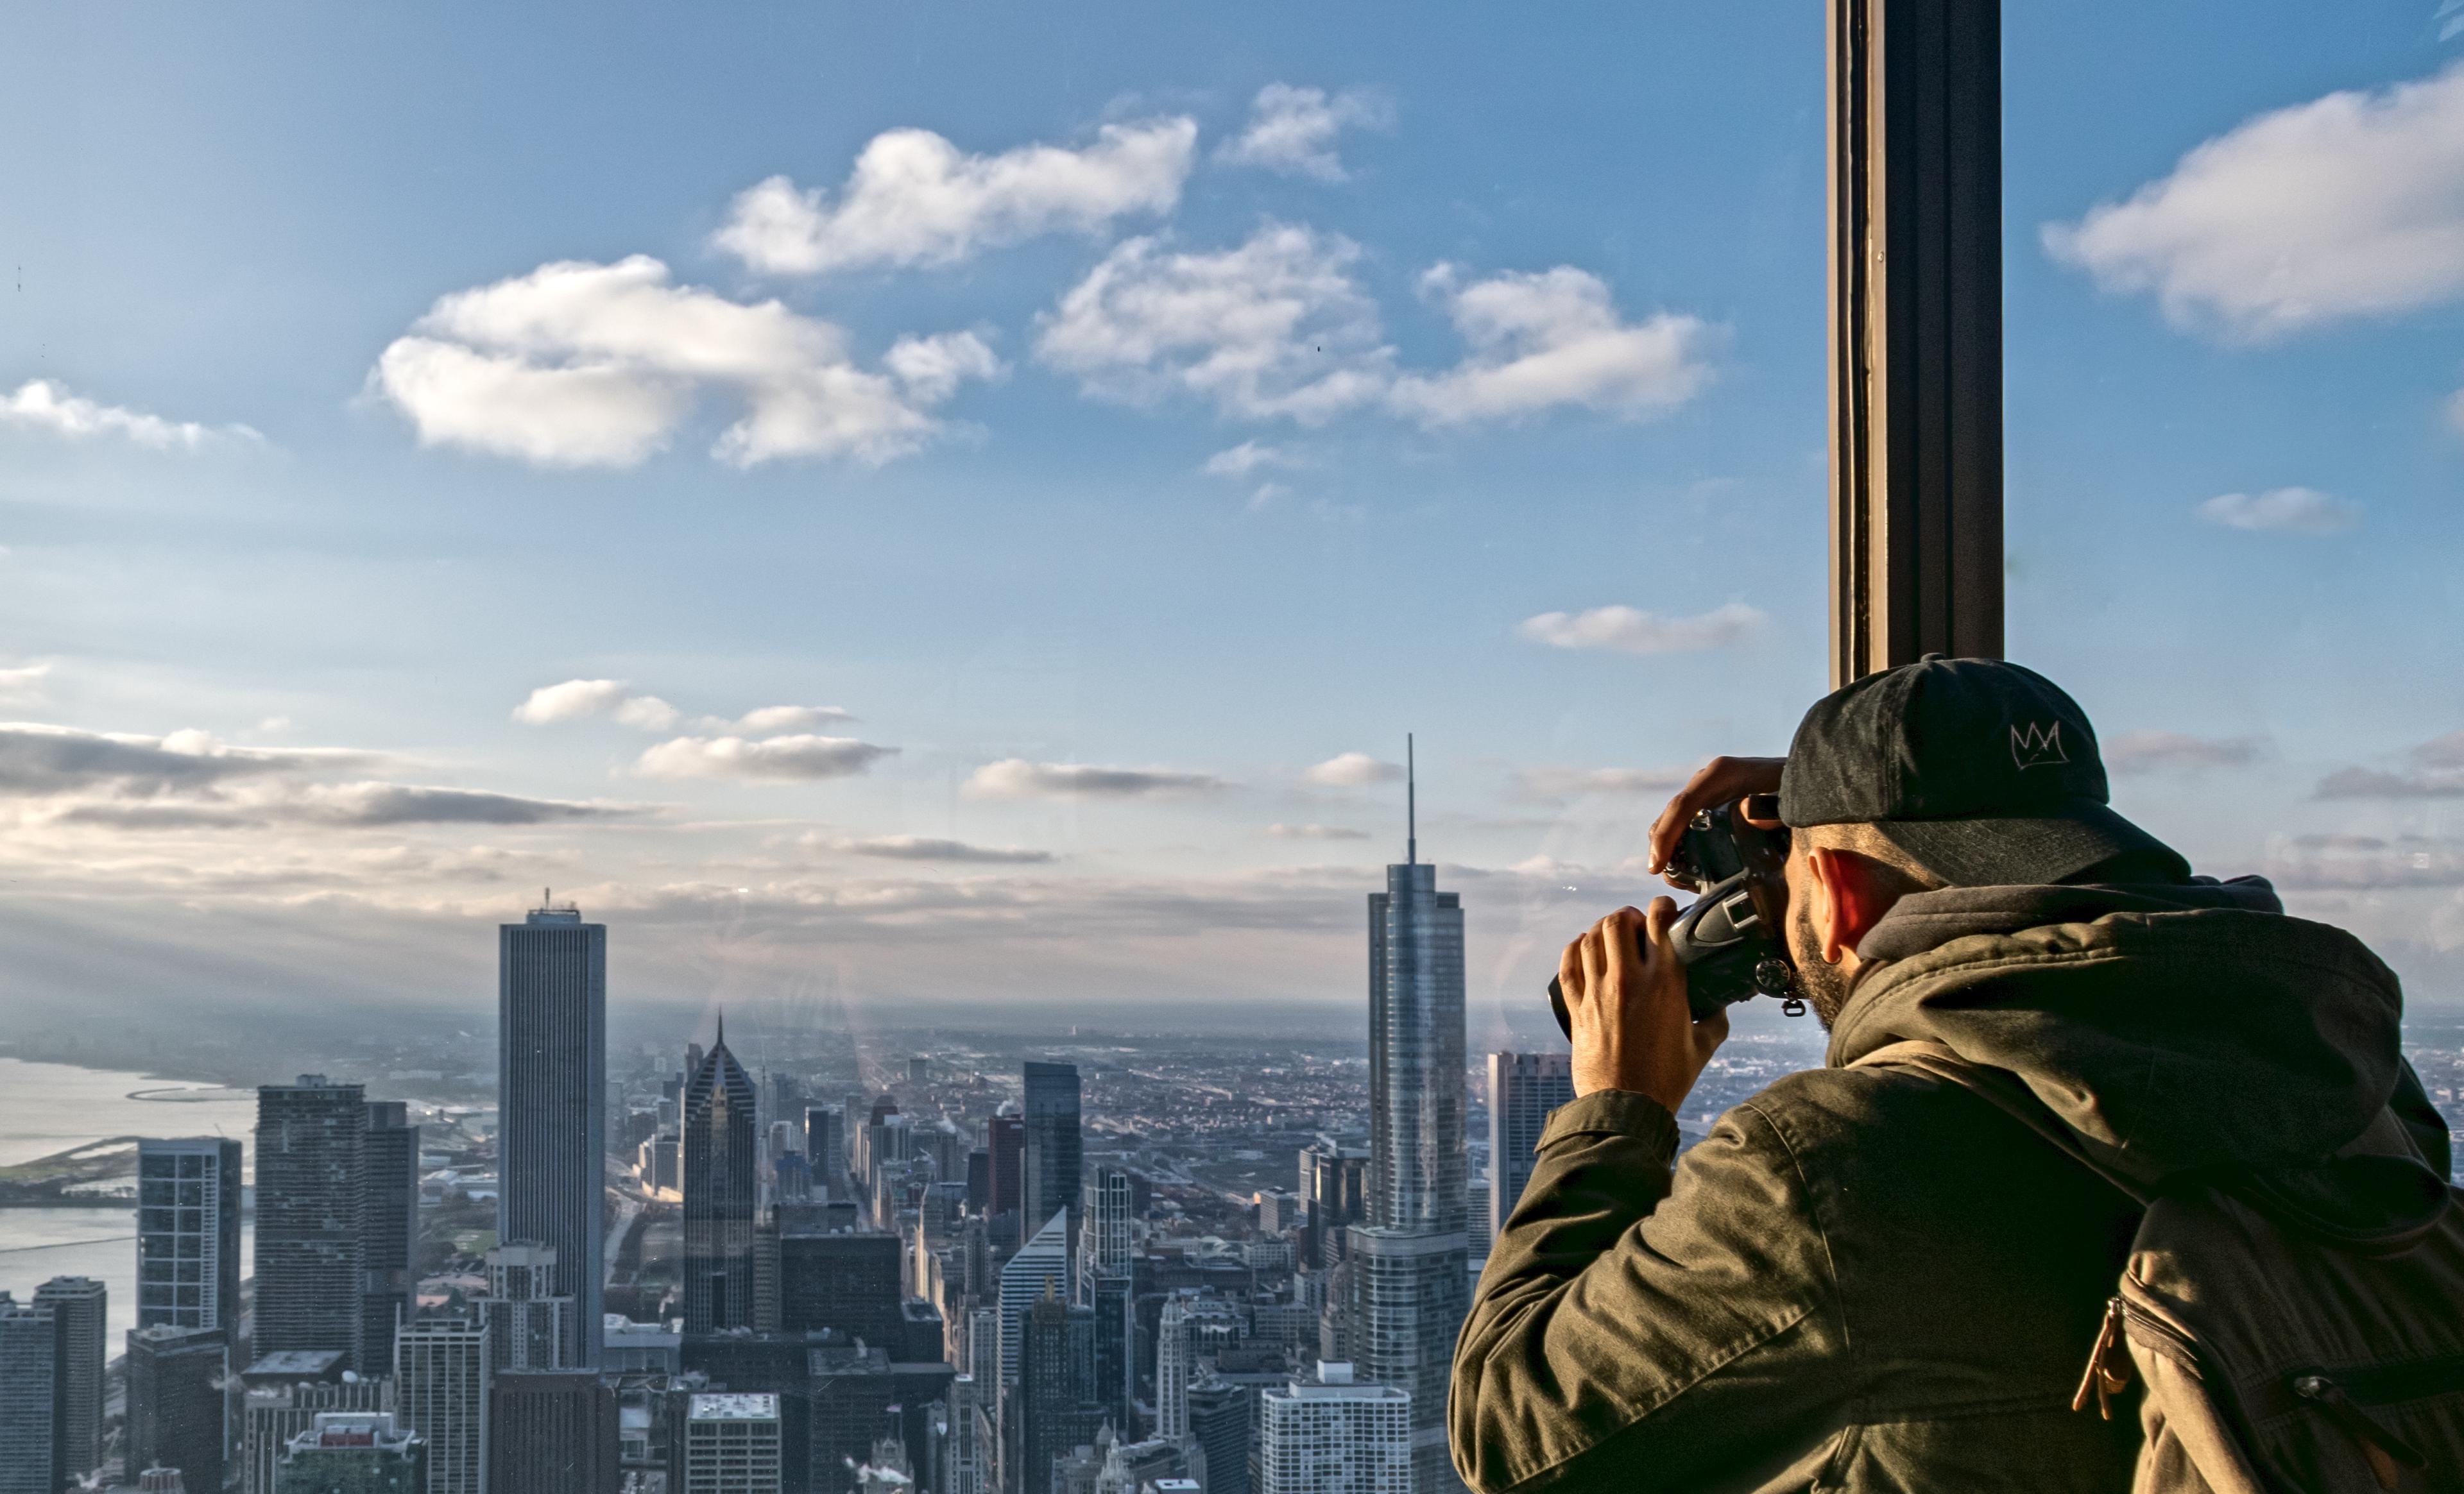 Chicago 360 - interior observation deck